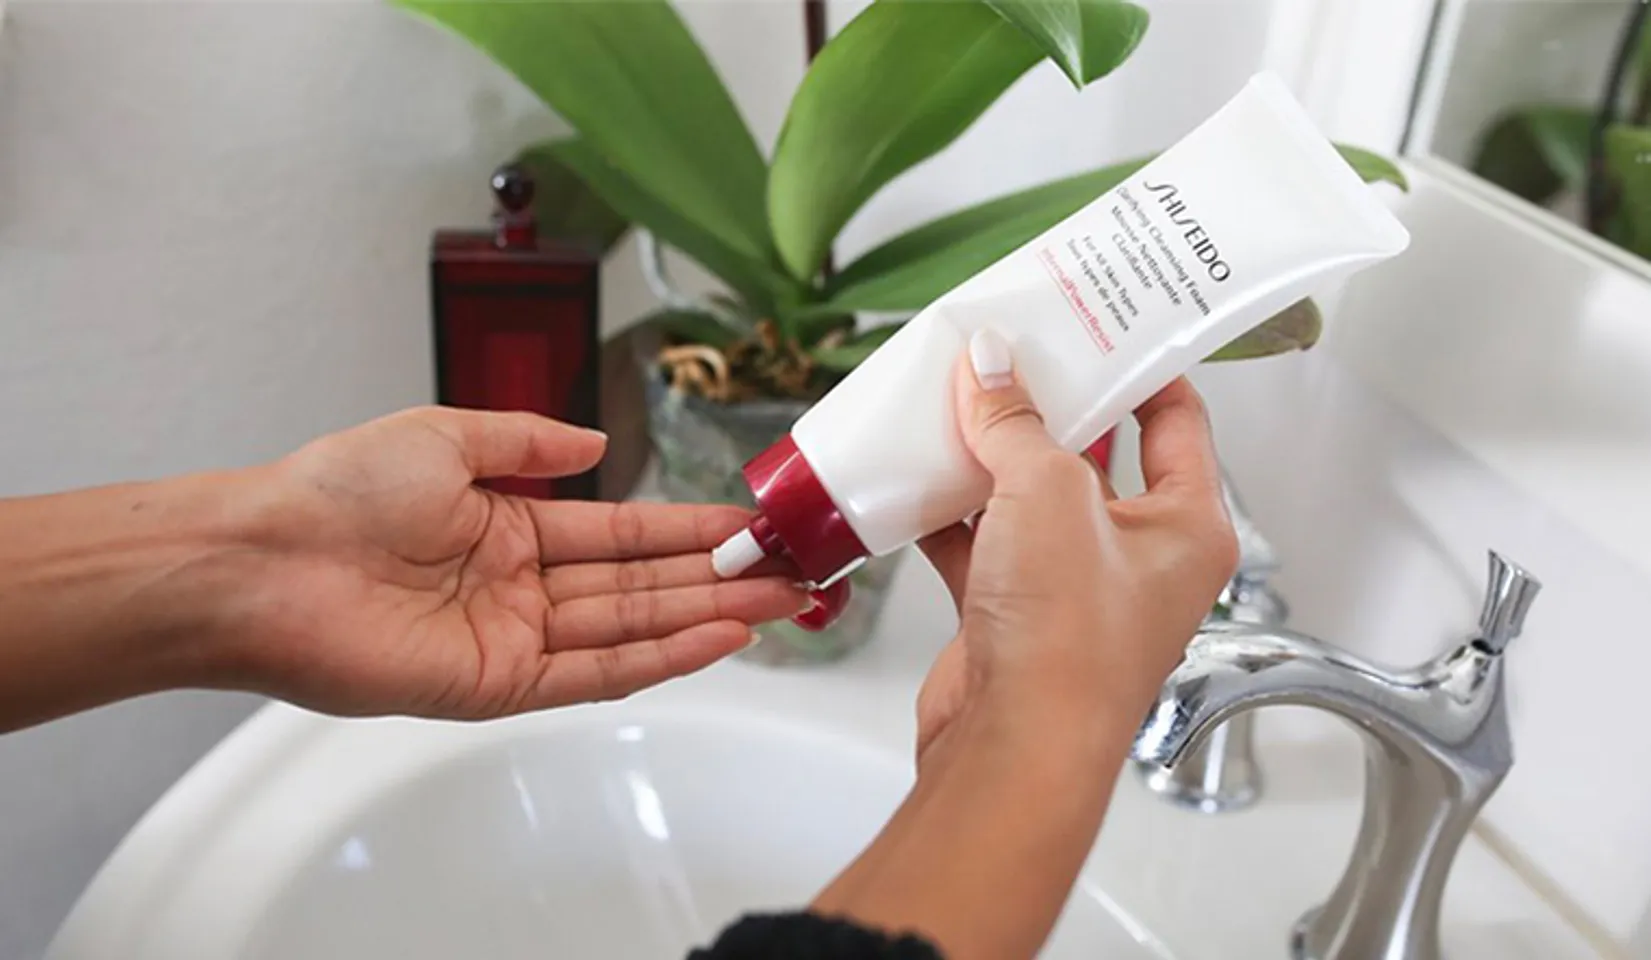 Shiseido Clarifying Cleansing Foam cảm nhận dịu nhẹ trên da